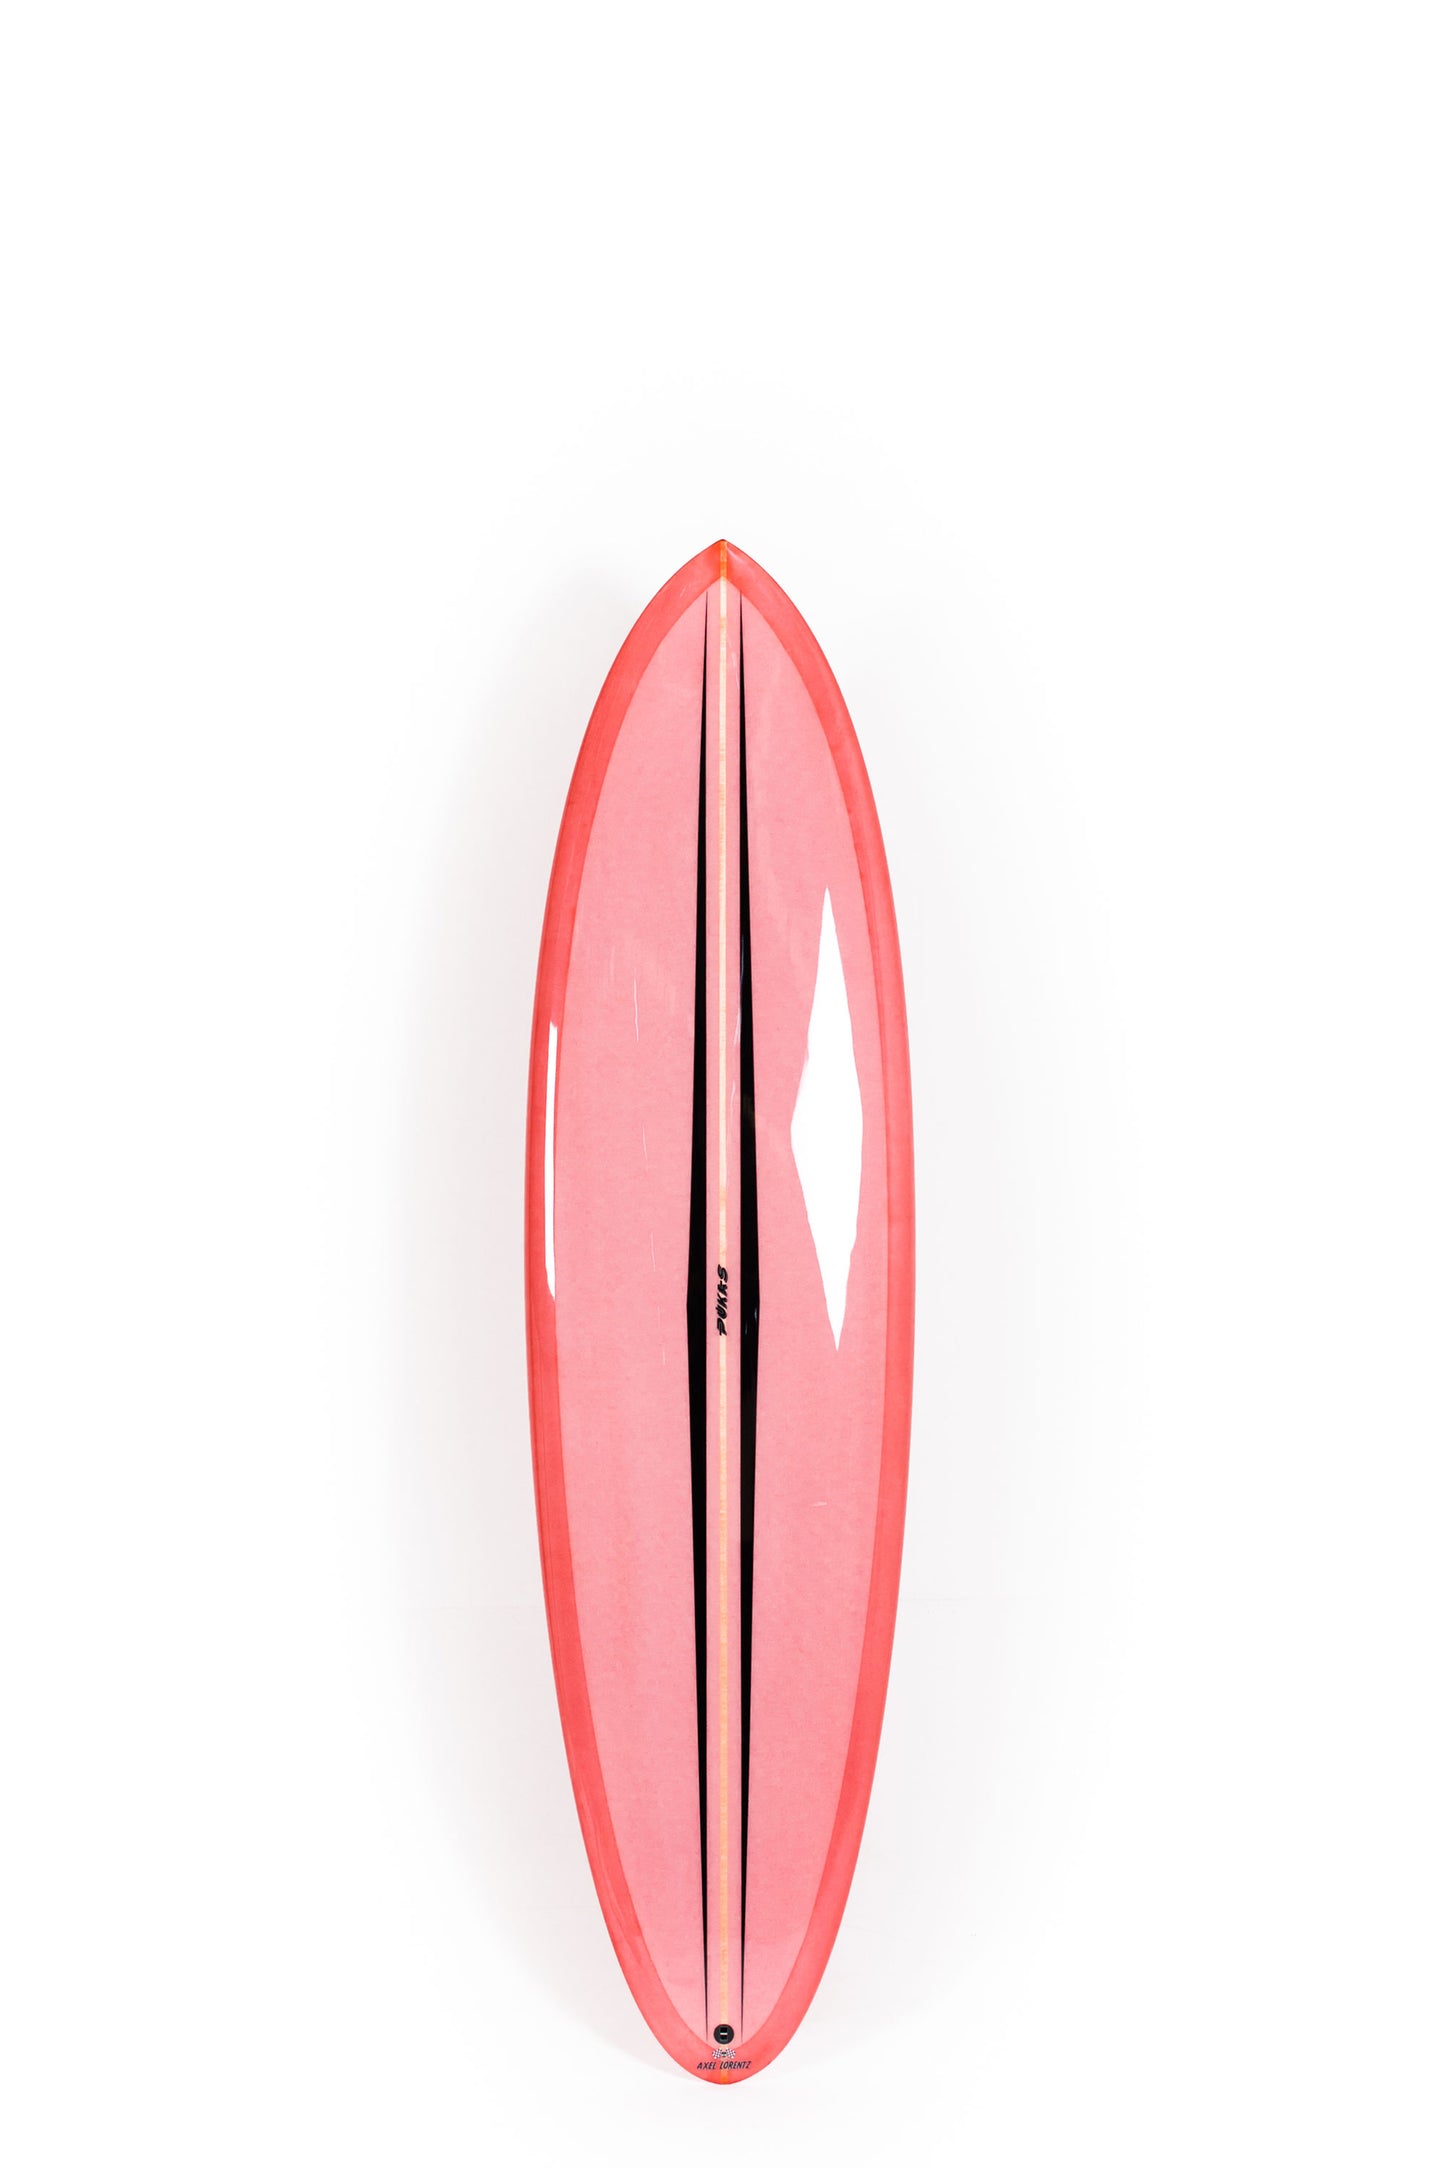 Pukas Surf Shop - Pukas Surfboard - LA CÔTE by Axel Lorentz - 6´11" x 21,44 x 2,97 - 48,05L -  AX09633